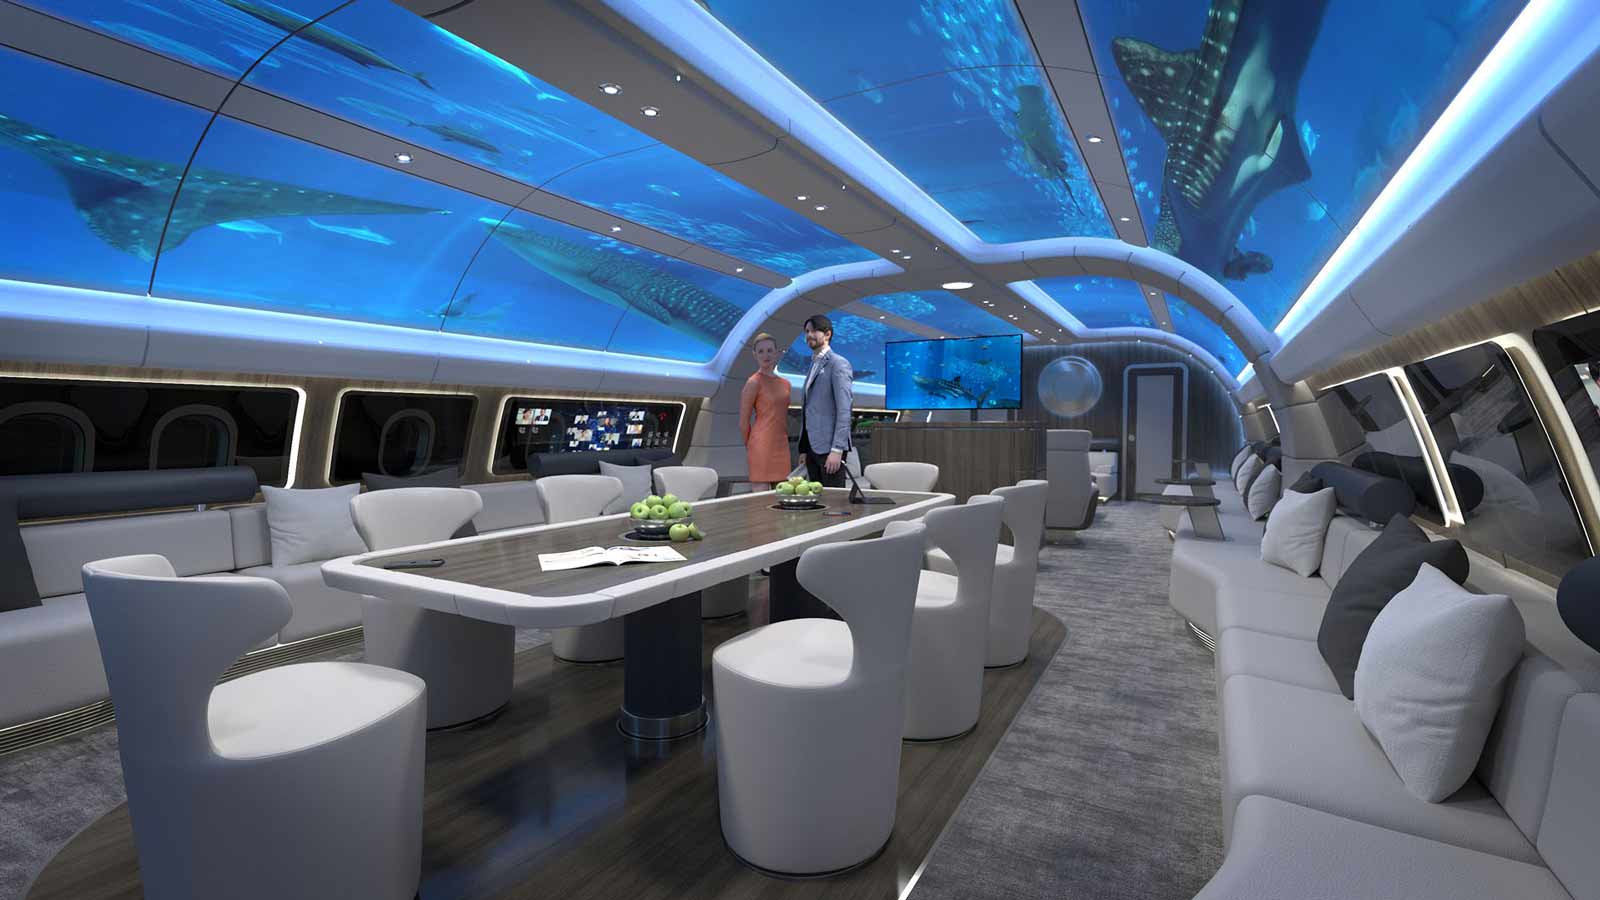 New ‘Underwater’ Plane Cabin Design Will Blow Your Mind